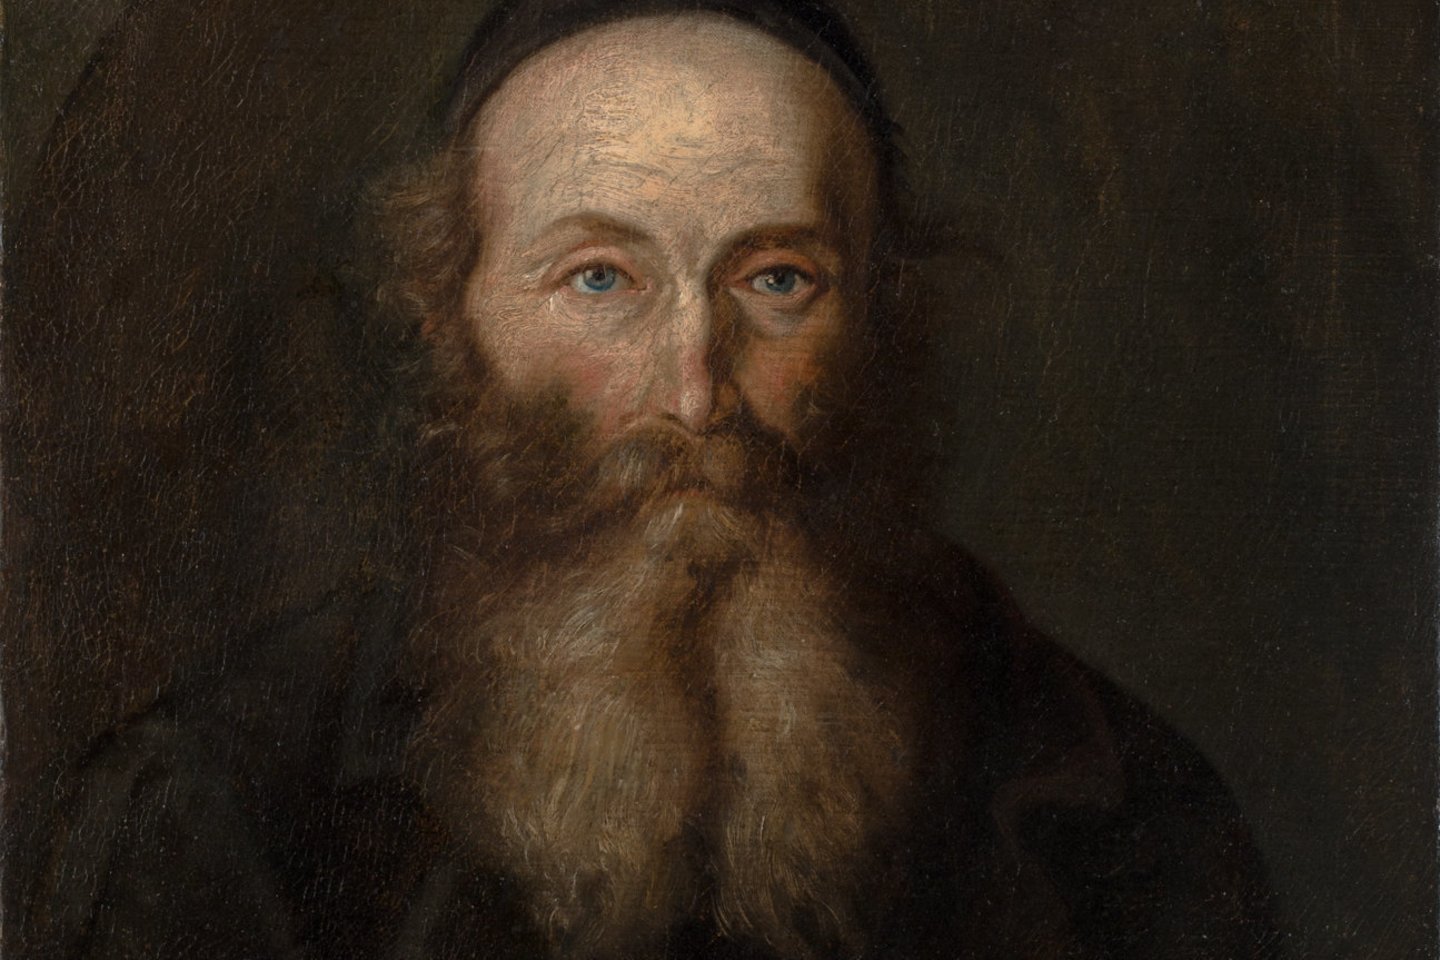   Vincento Smakausko kūrinio „Seno žydo portretas“ (187? m.) fragmentas.<br> Rengėjų nuotr.